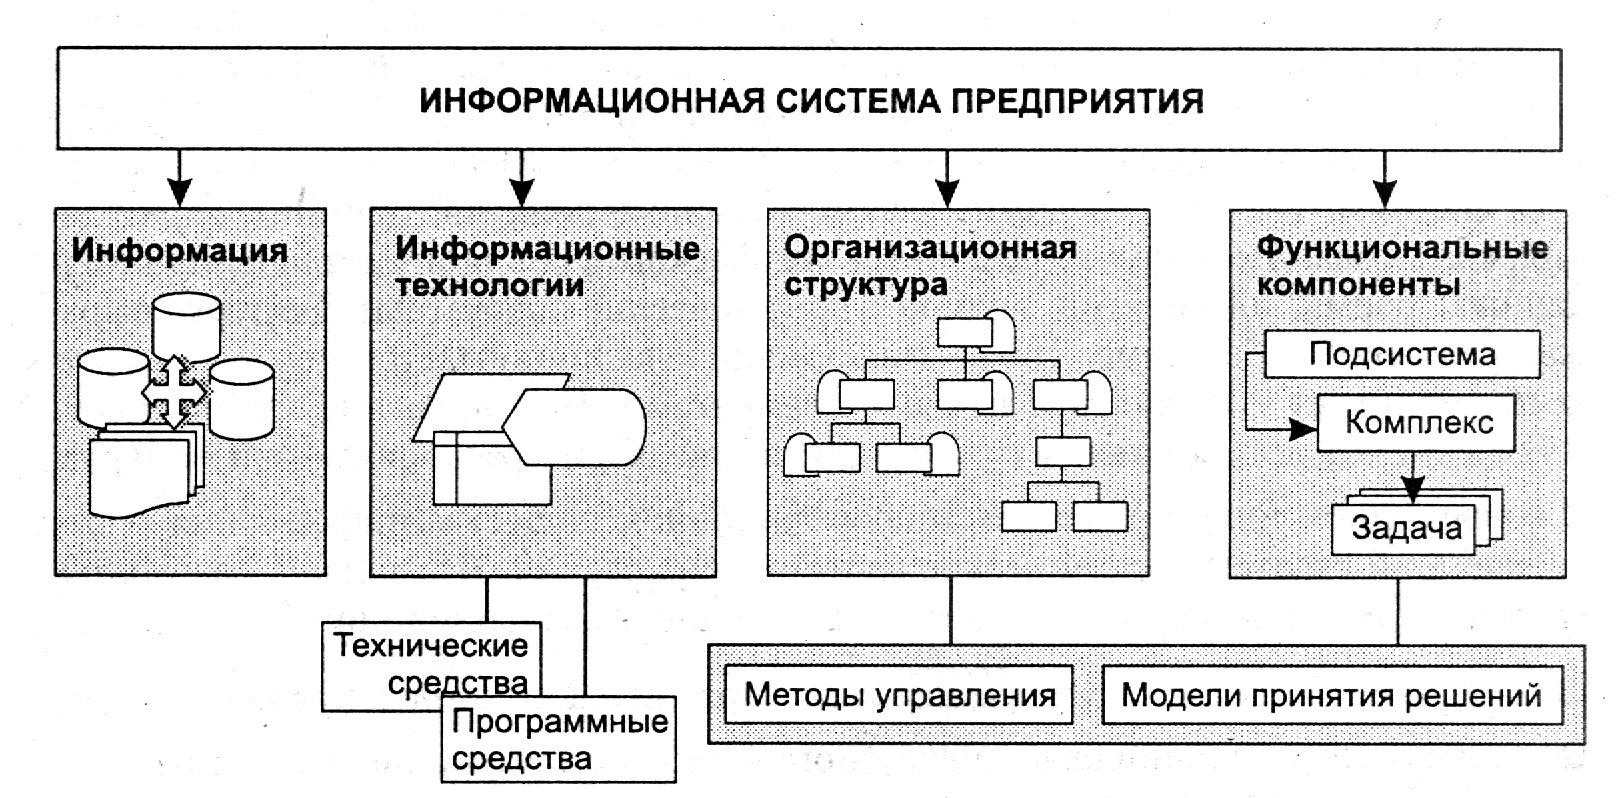 Схема информационной системы предприятия